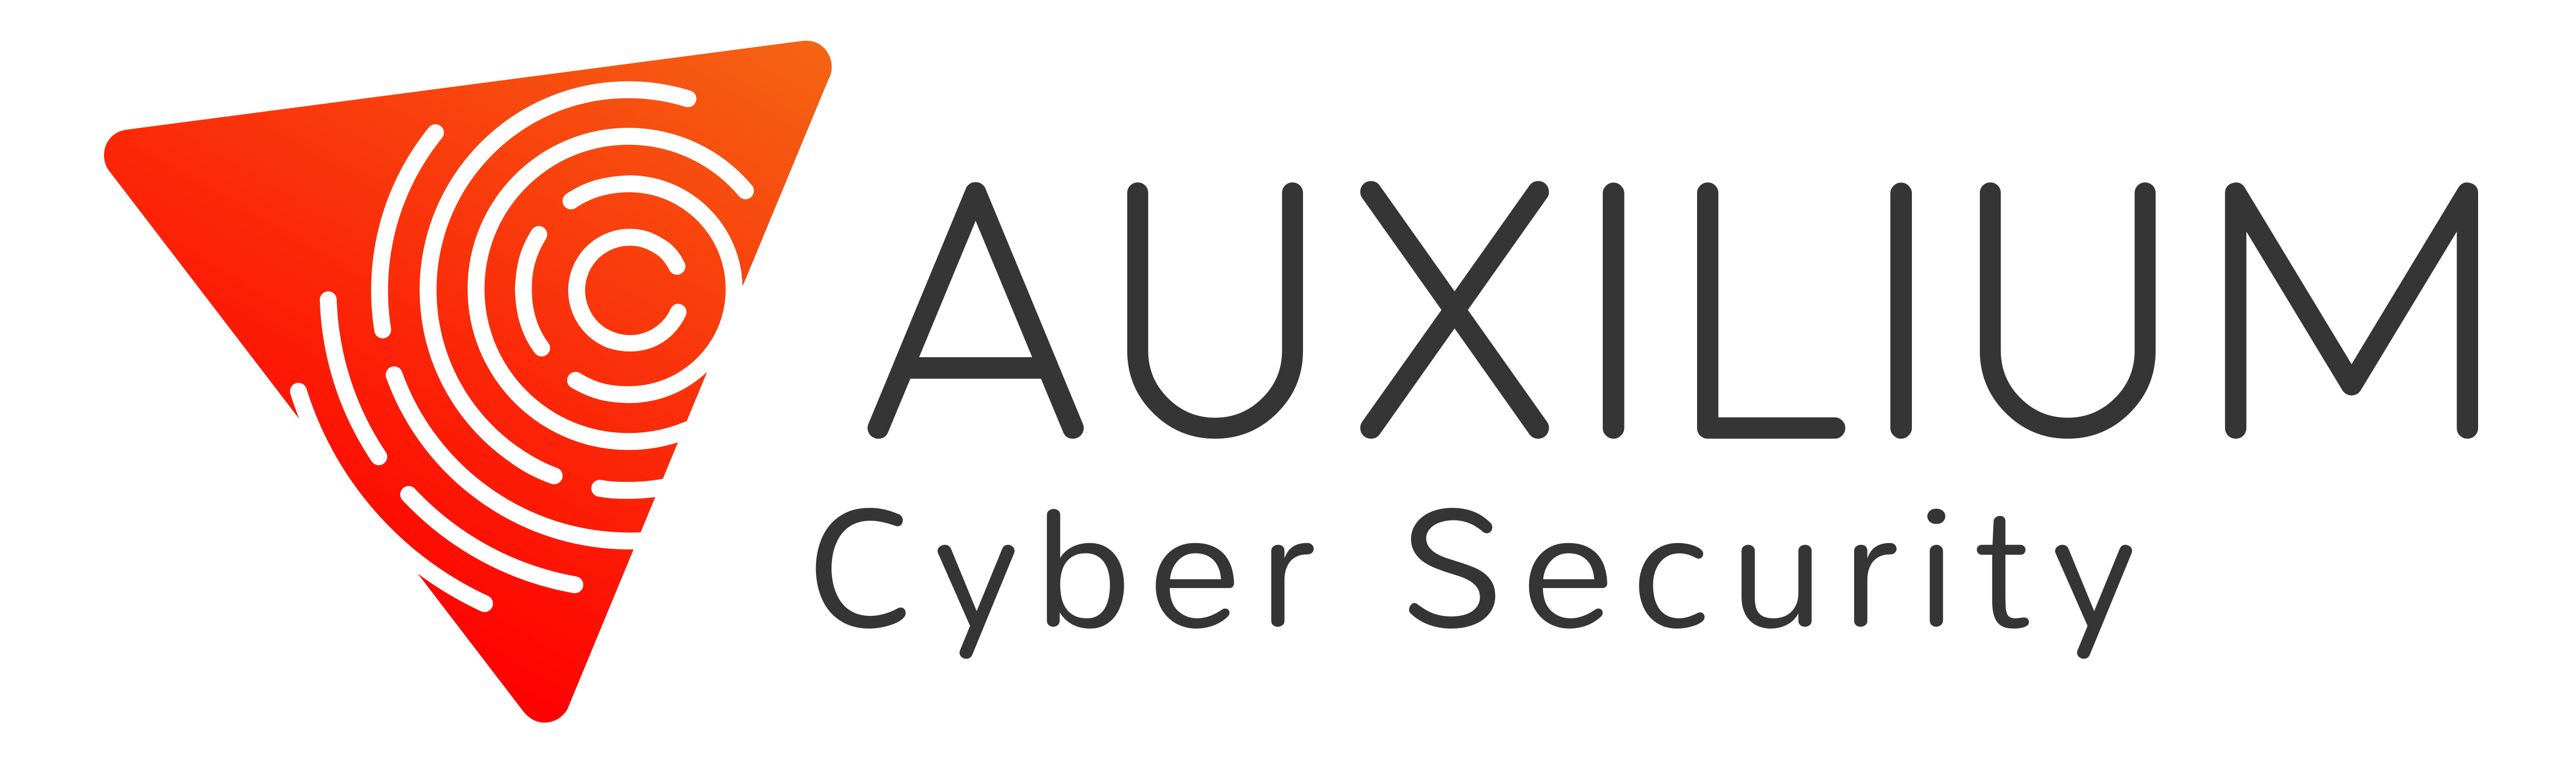 Auxilium Cyber Security